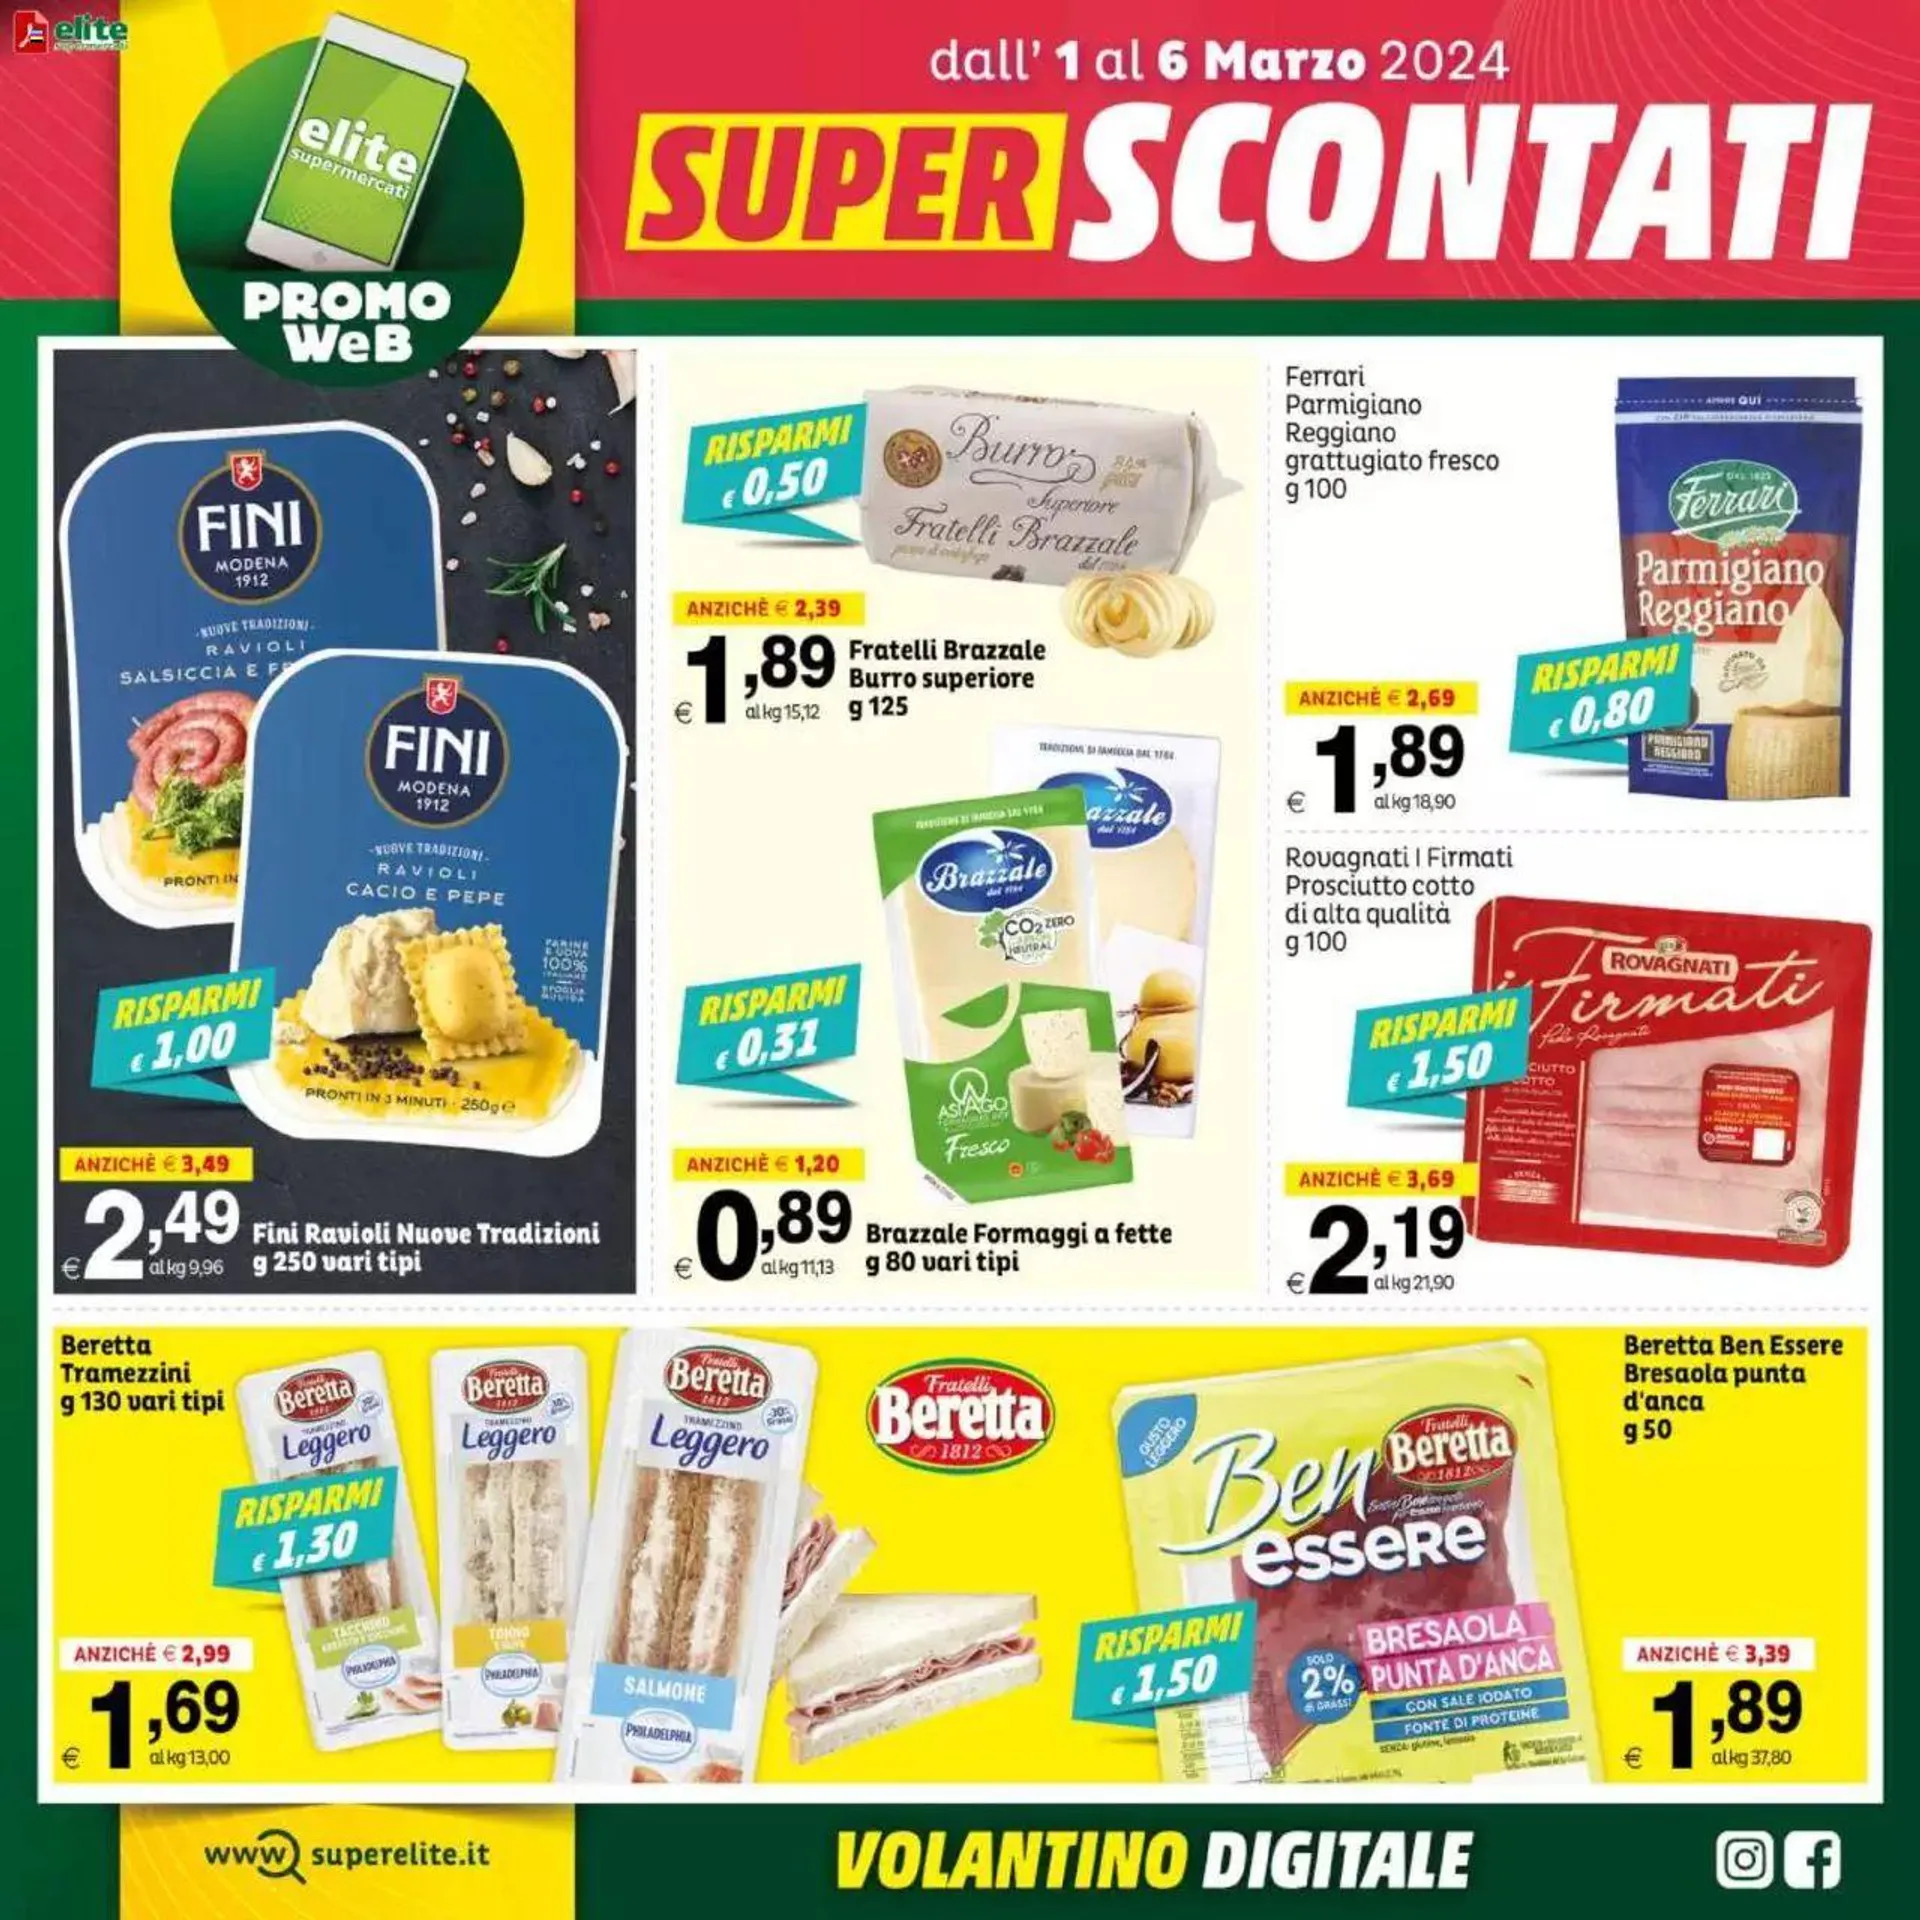 Elite Supermercati - Super Scontati da 1 marzo a 6 marzo di 2024 - Pagina del volantino 3